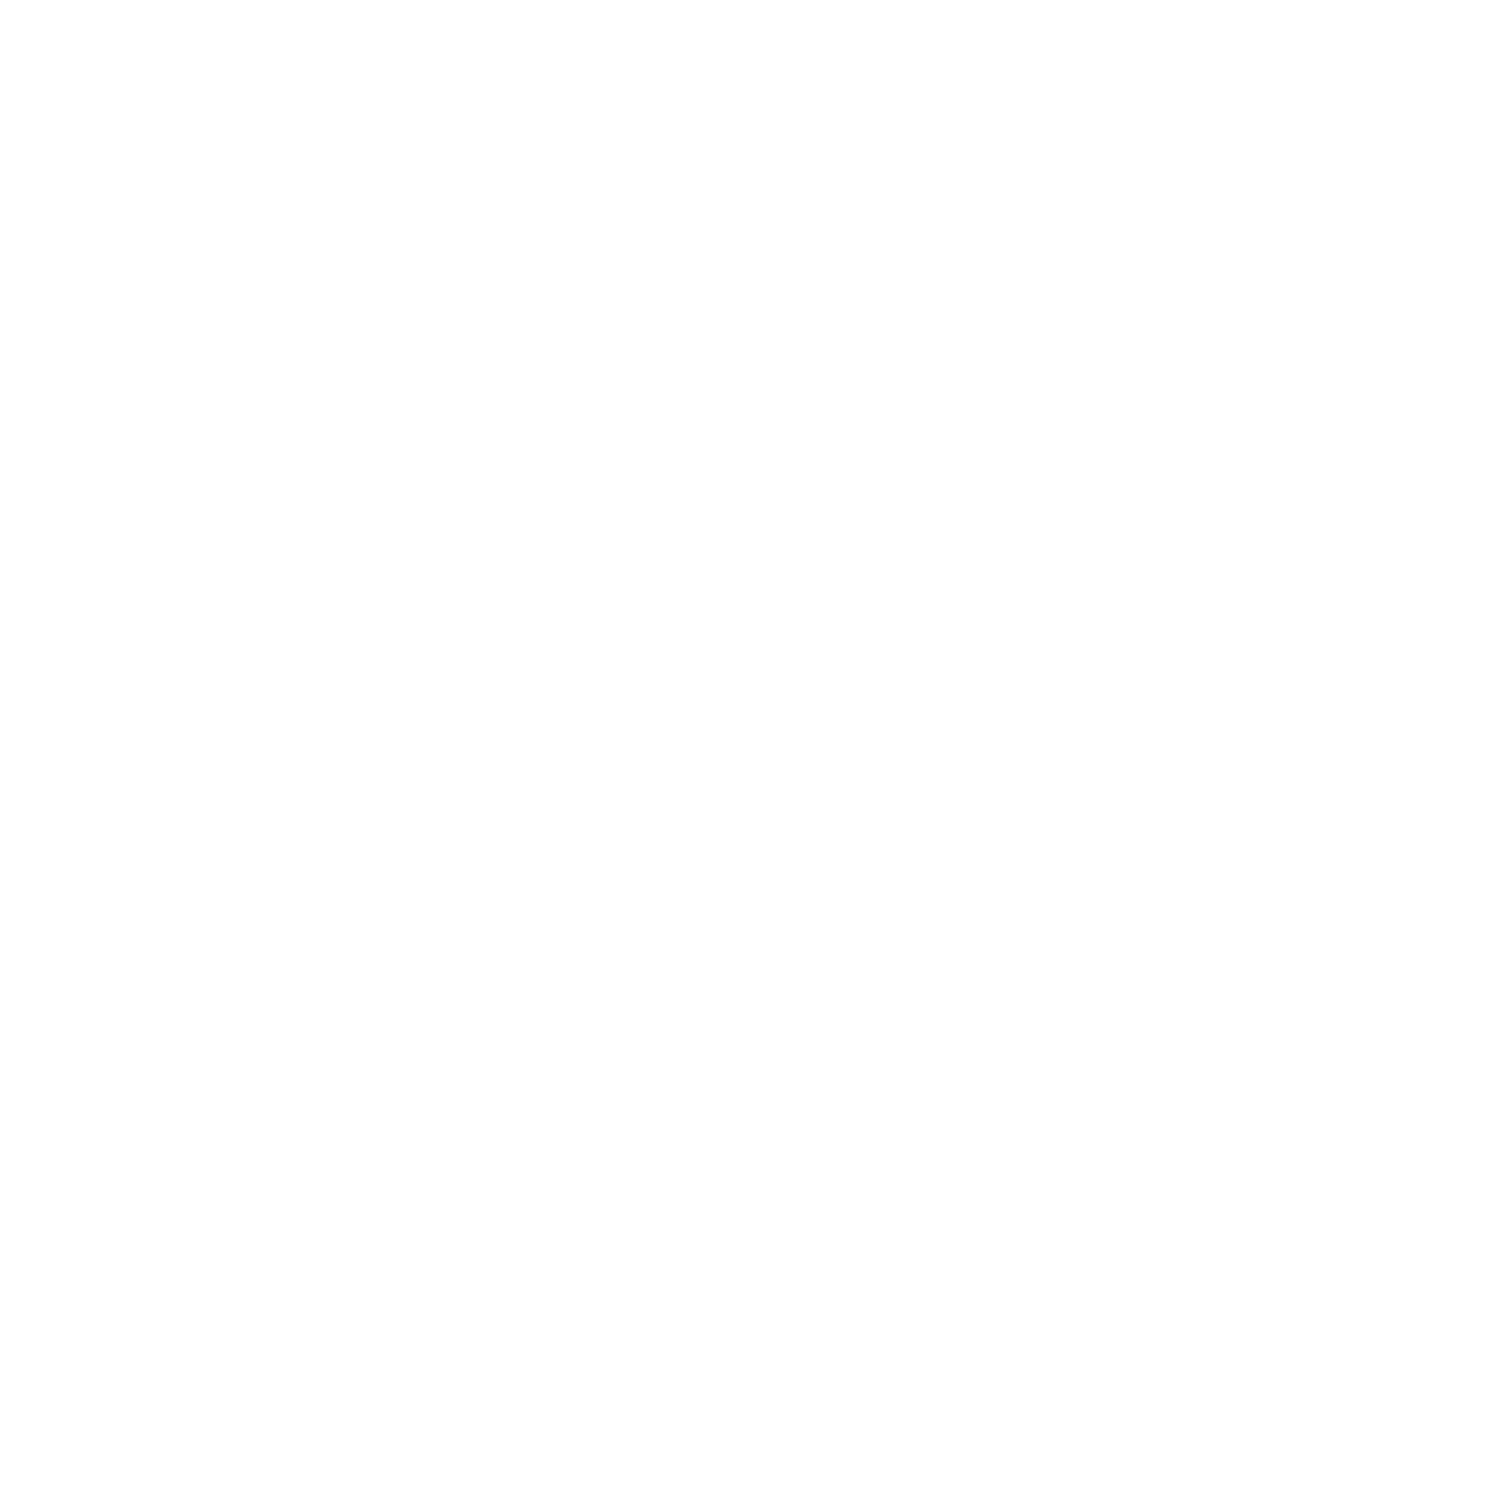 fleet pride safety seal